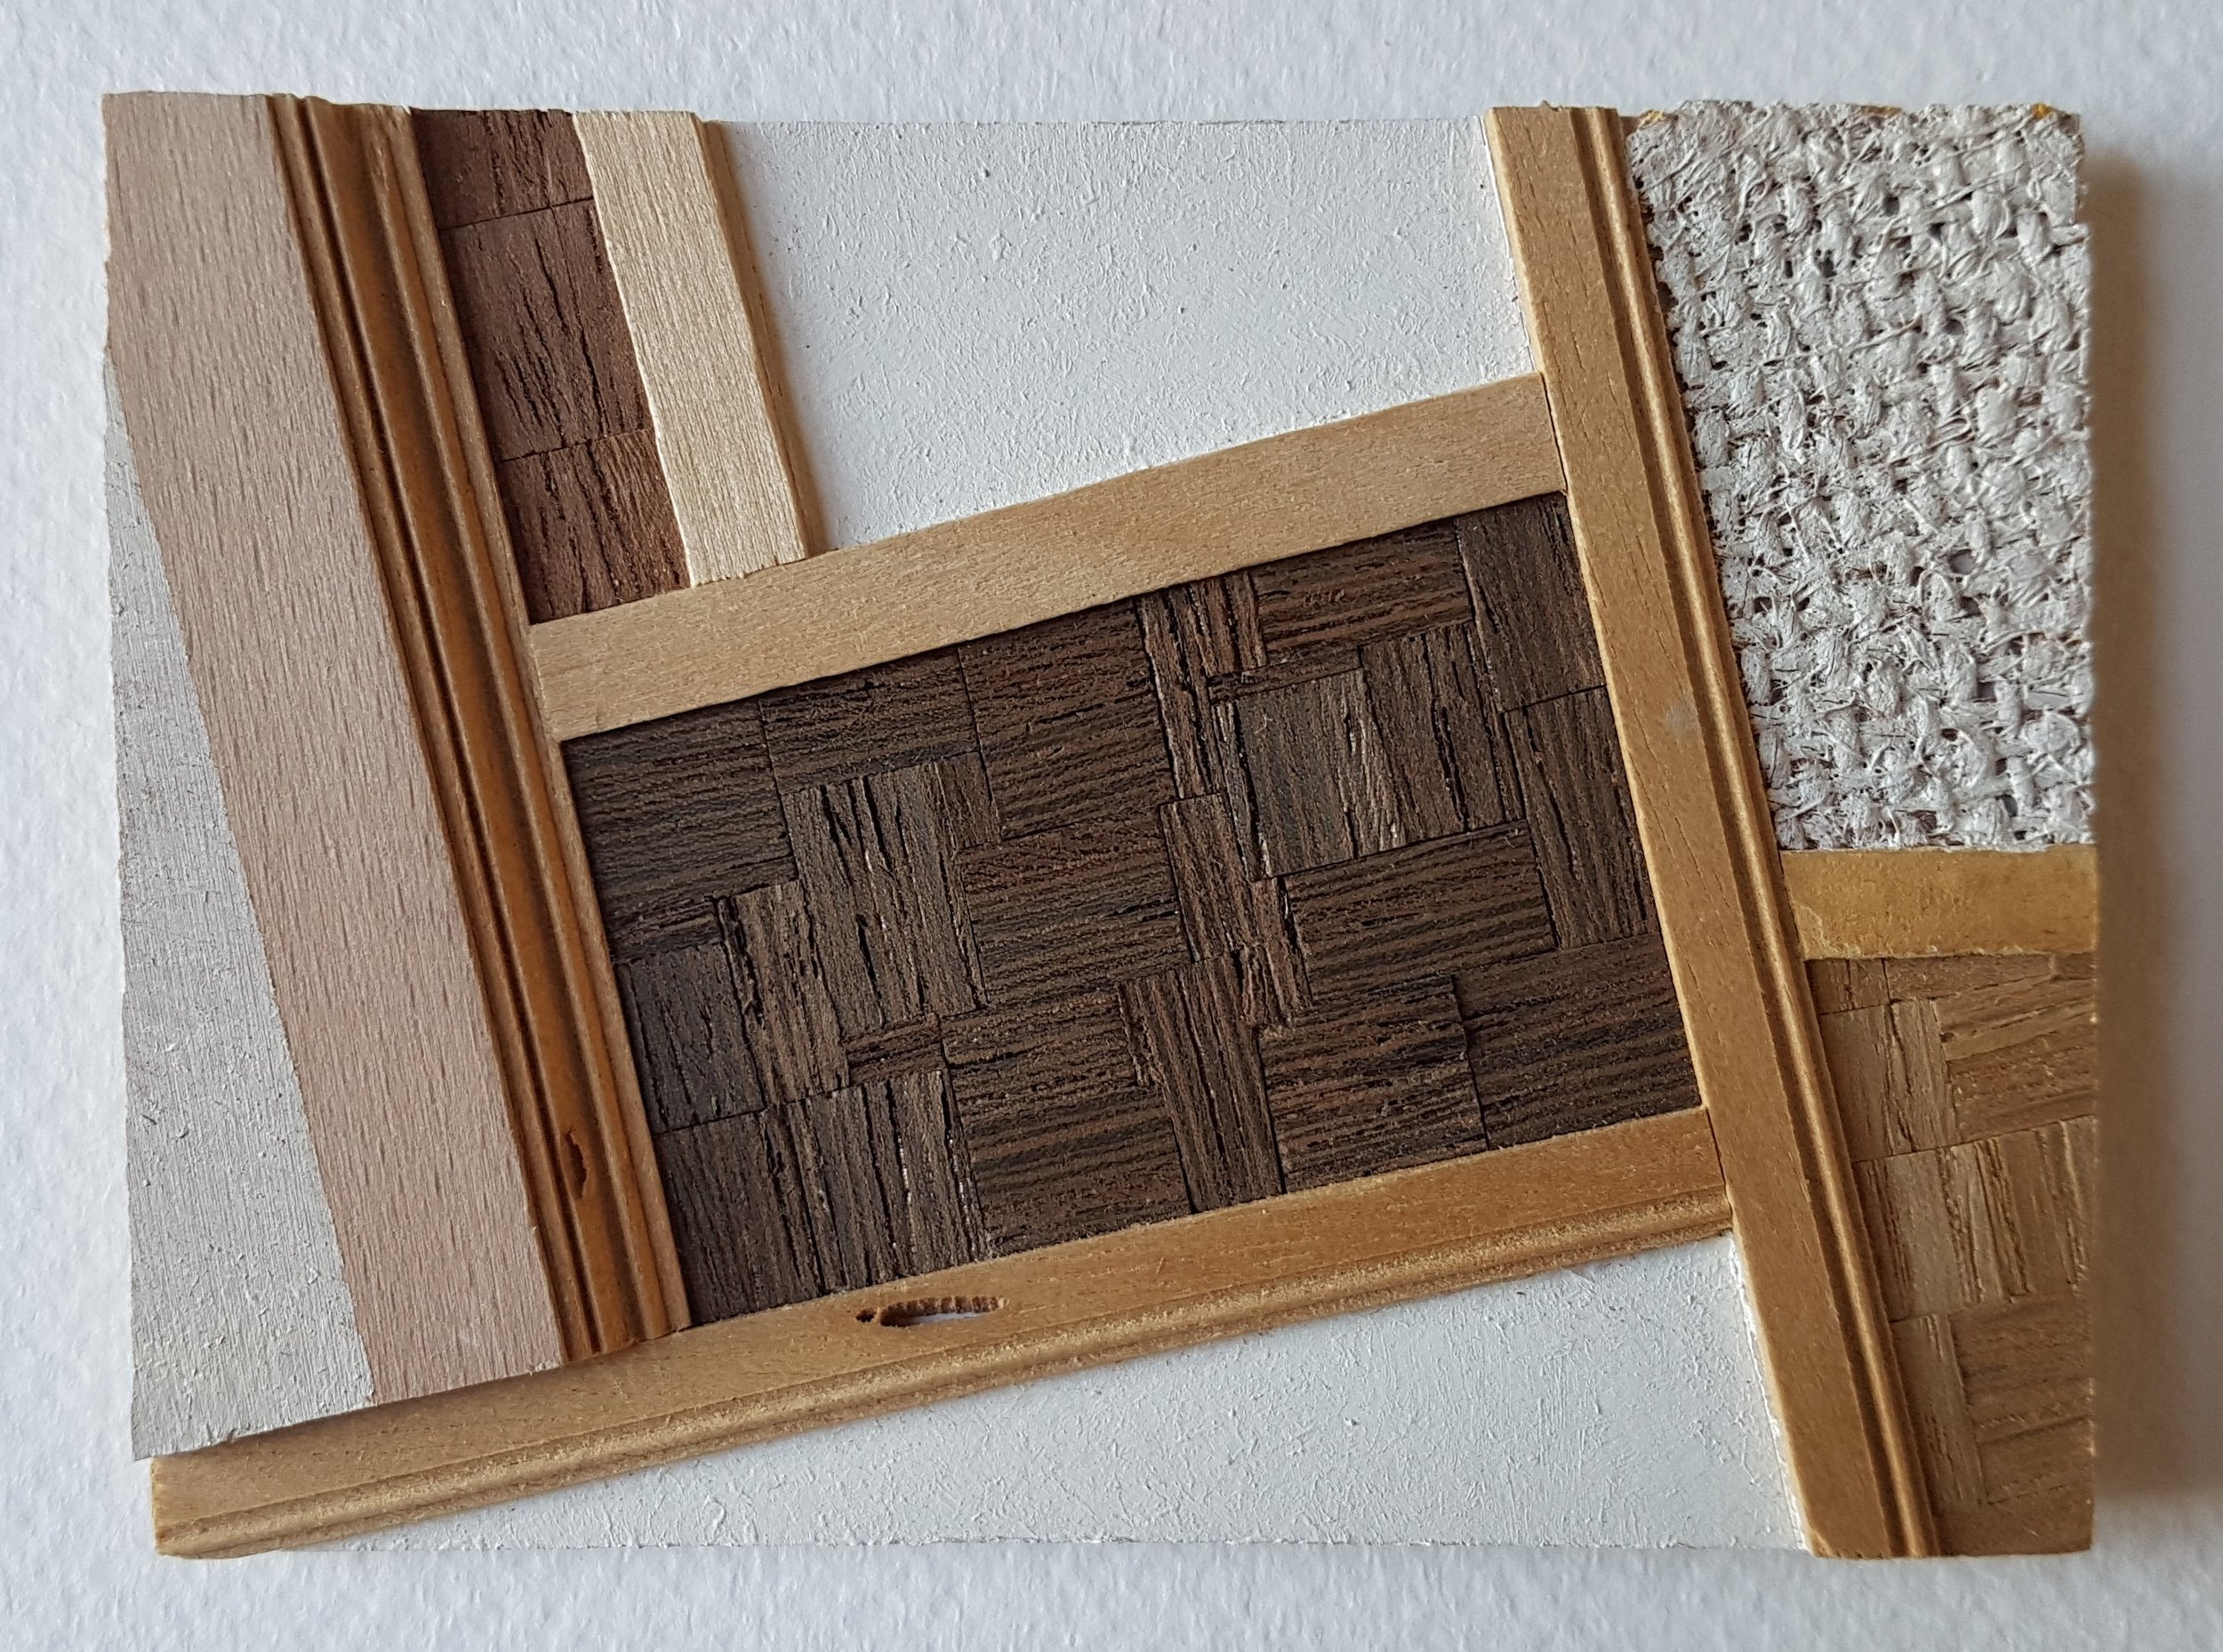 Series 64-29 (2013): wood veneers and mixed media 10cm x 8cm